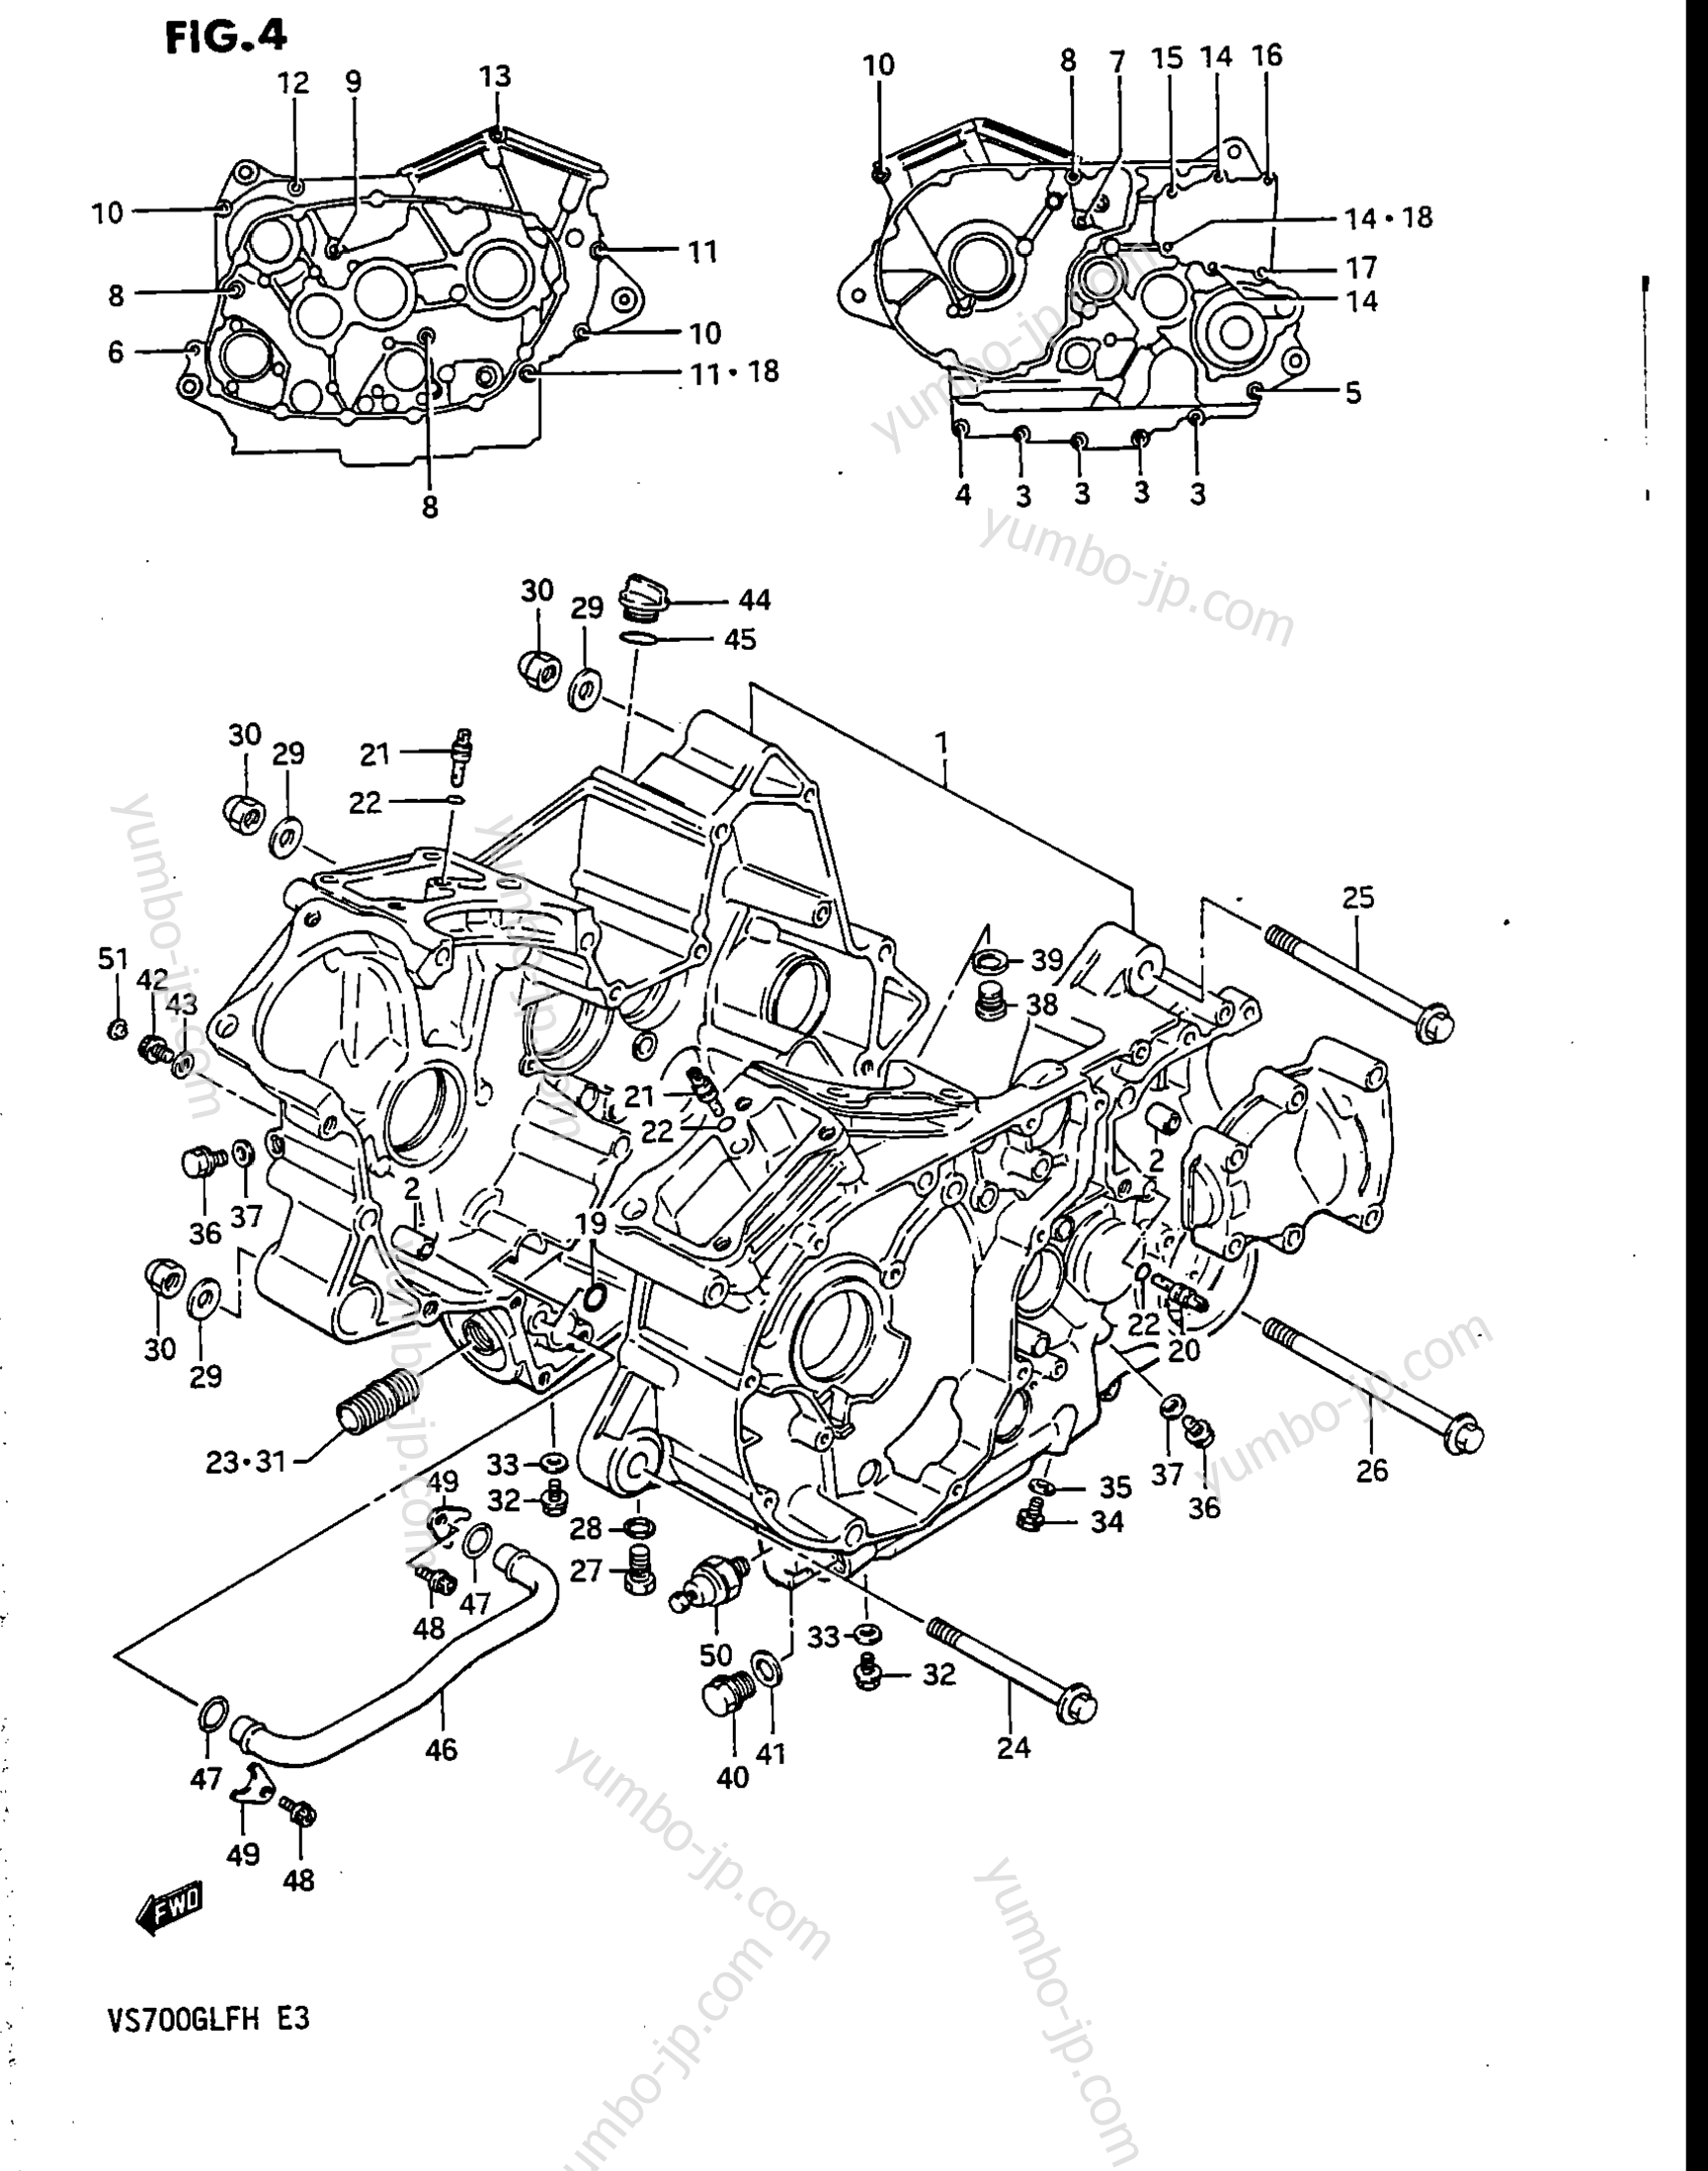 Крышка картера для мотоциклов SUZUKI Intruder (VS700GLEF) 1987 г.